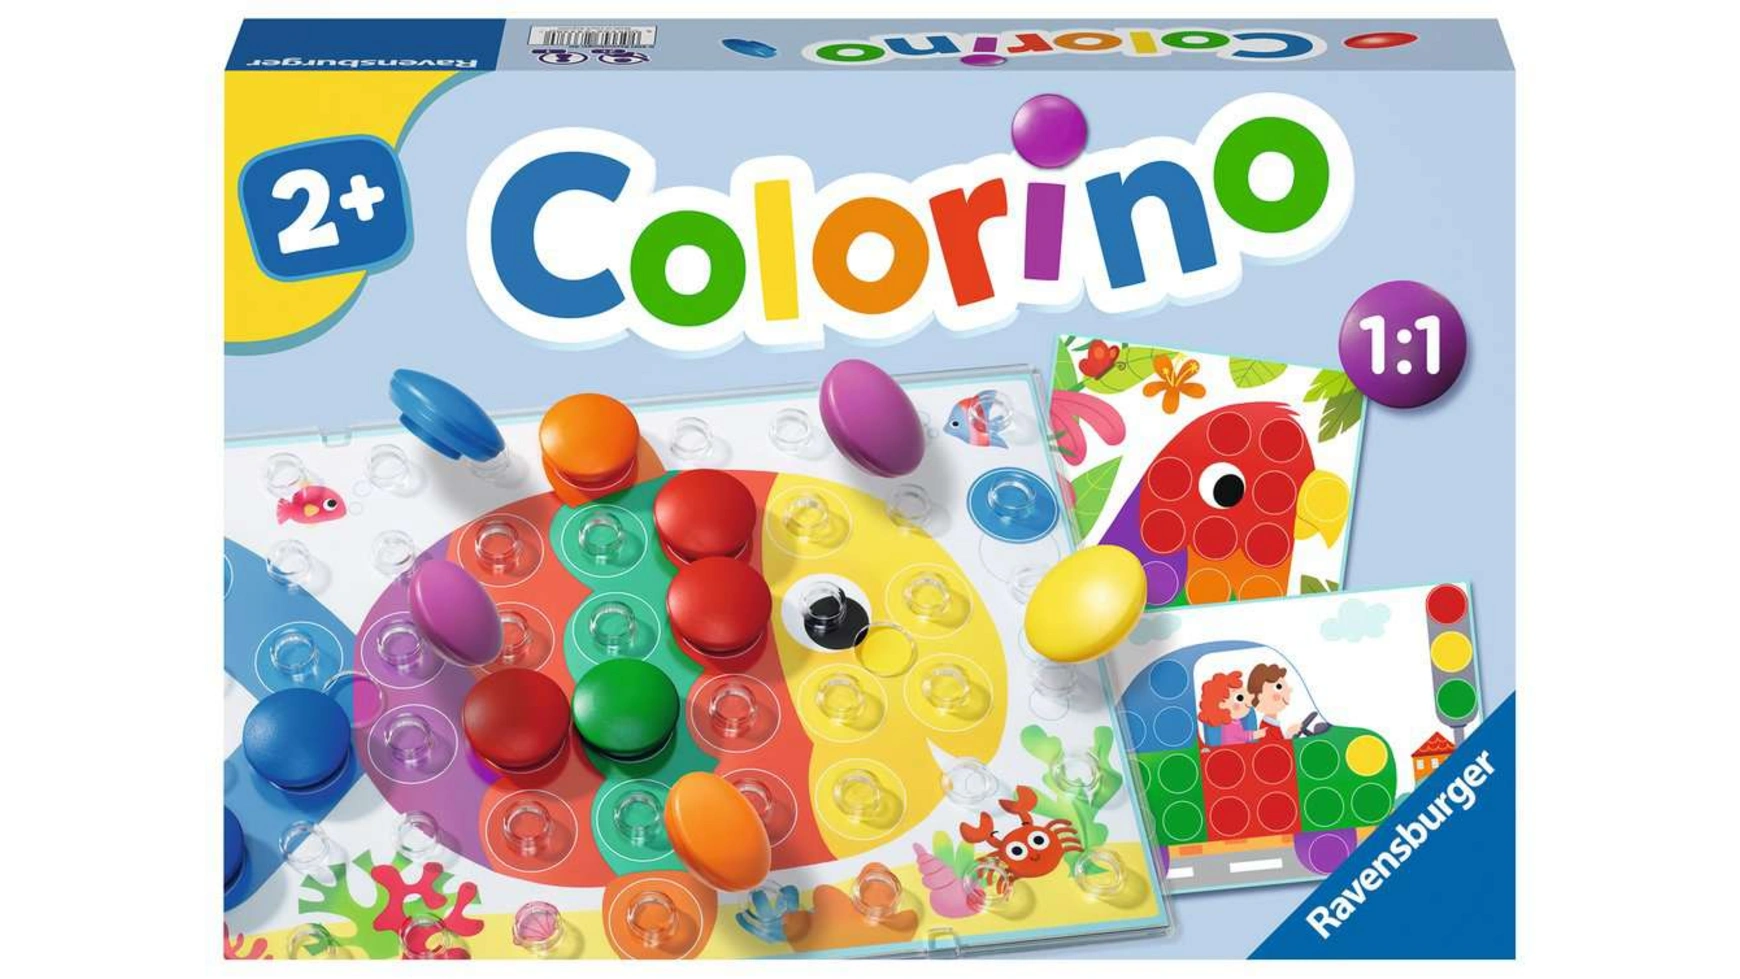 Ravensburger Spiele Колорино детская игра для изучения цветов, игра-мозаика, плагин, игрушка от 2 лет колорино